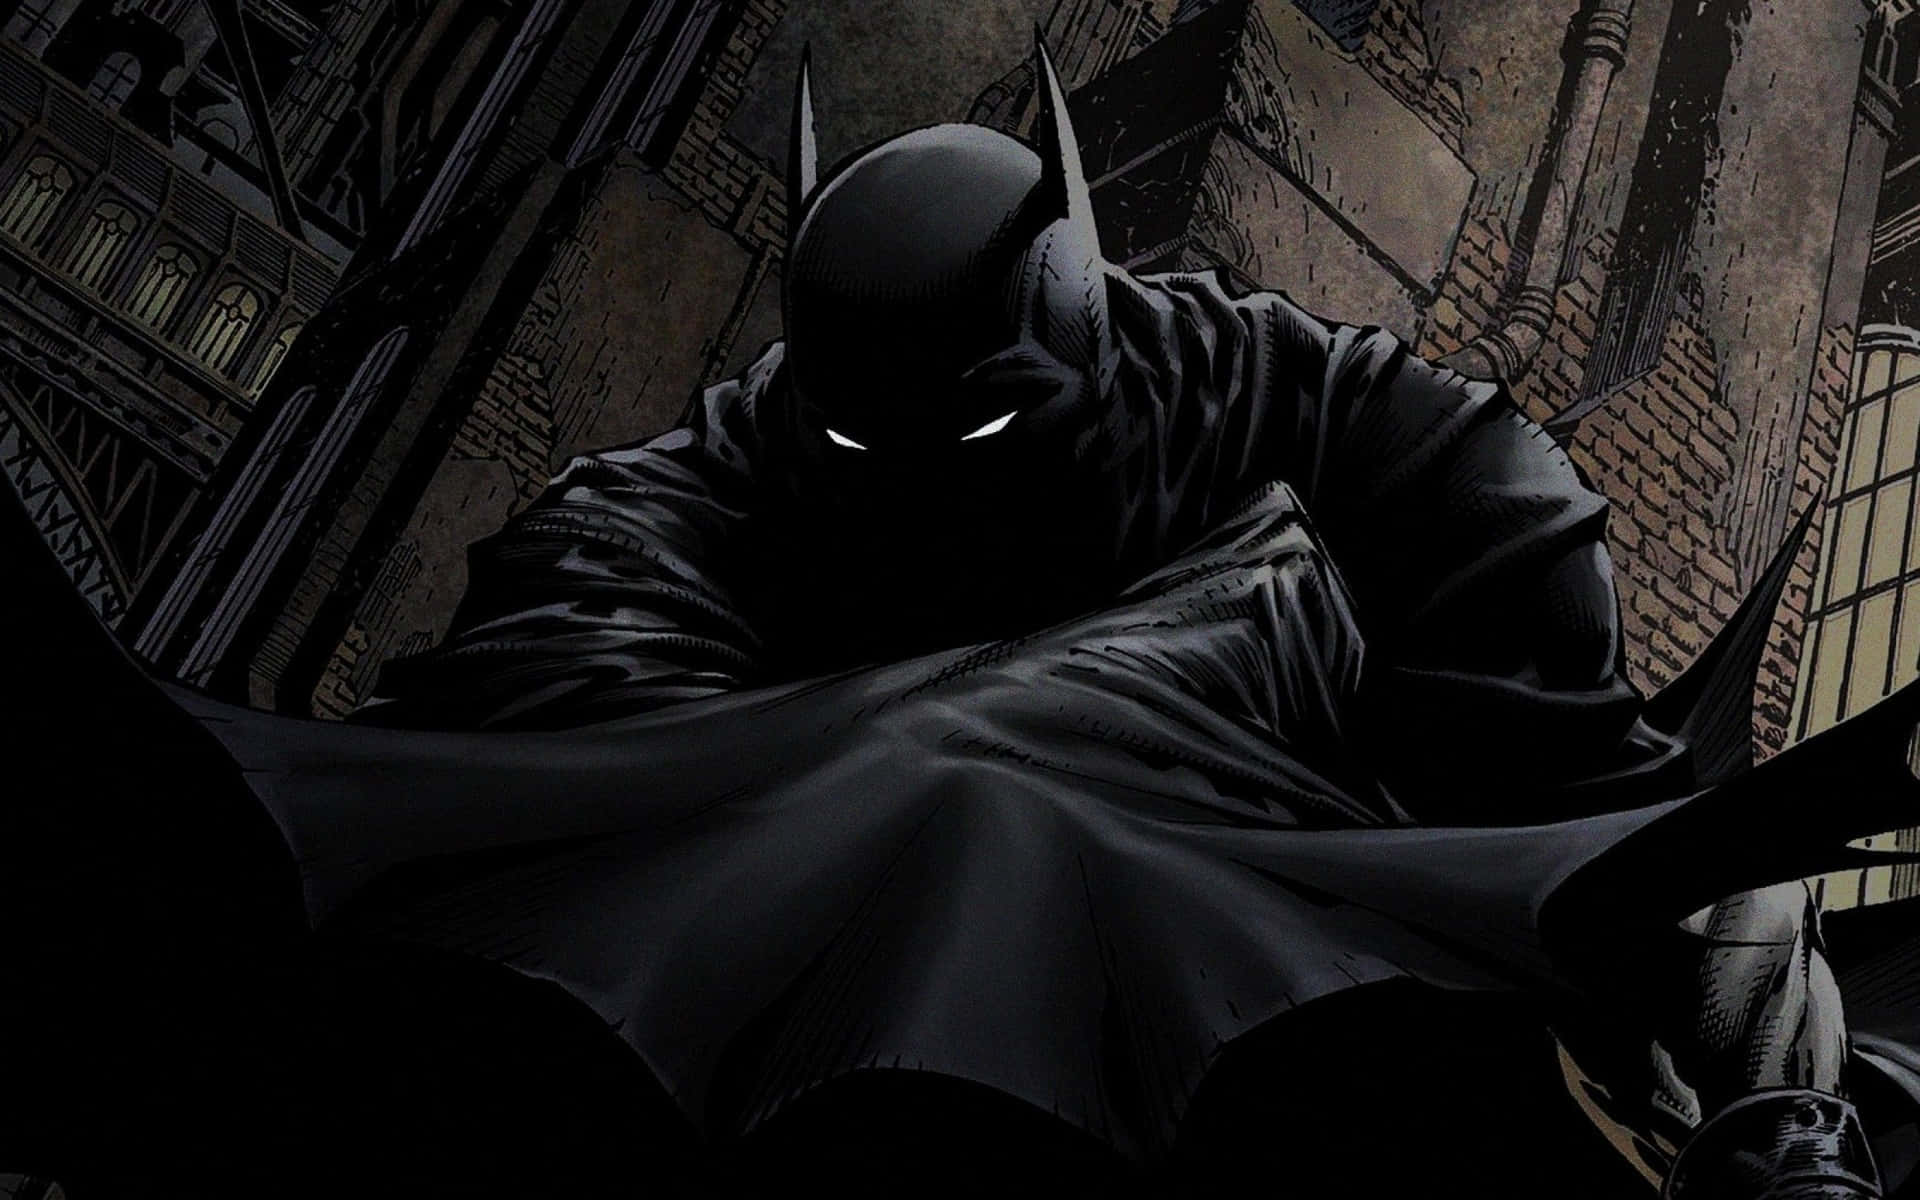 Cómicde Batman Oculto En Una Imagen De Oscuridad.